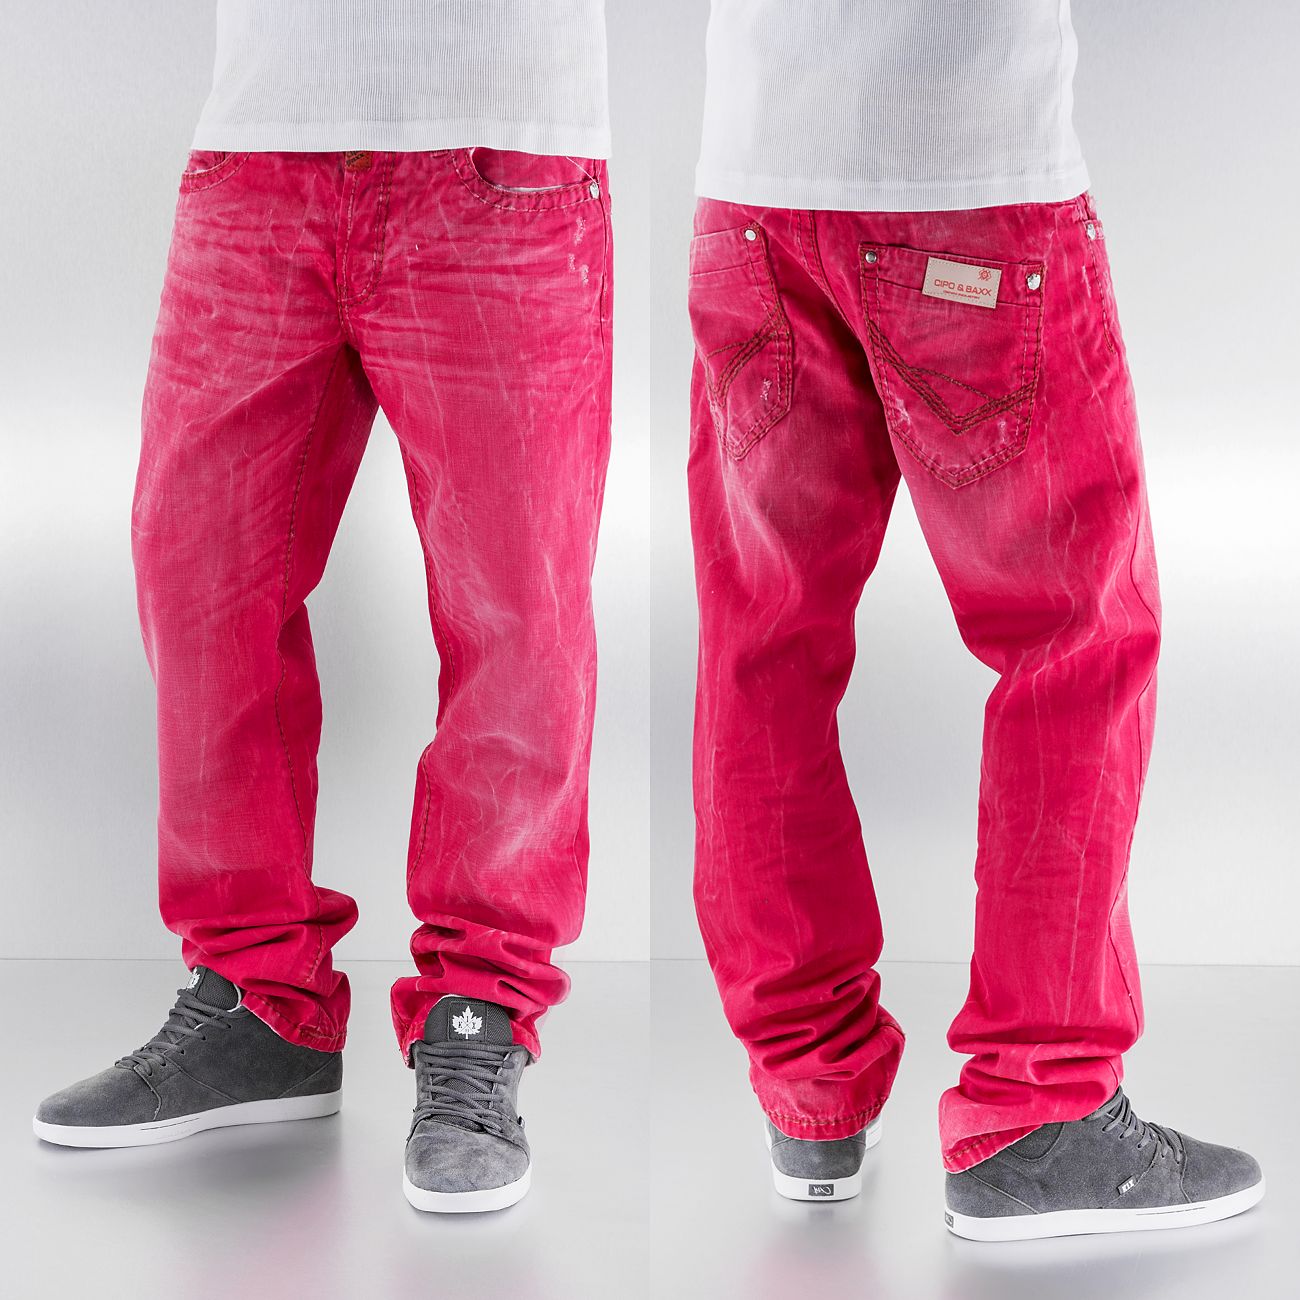 cipo & baxx jeans sale